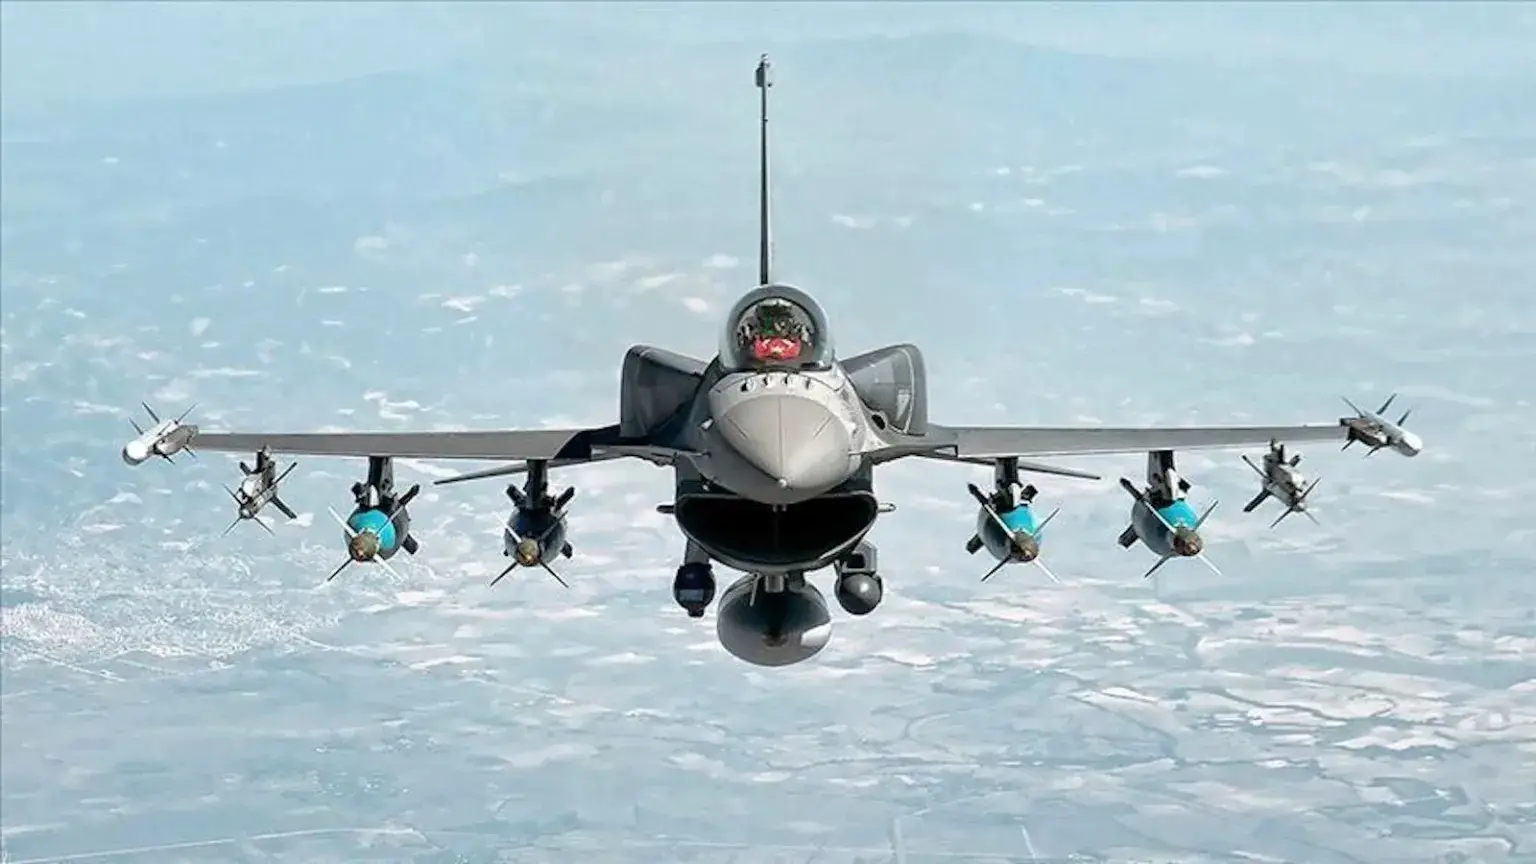  Έβγαλαν ξανά τα F-16 οι Τούρκοι στο Αιγαίο μετά από τέσσερις μήνες!  Οι πρώτες παραβιάσεις.